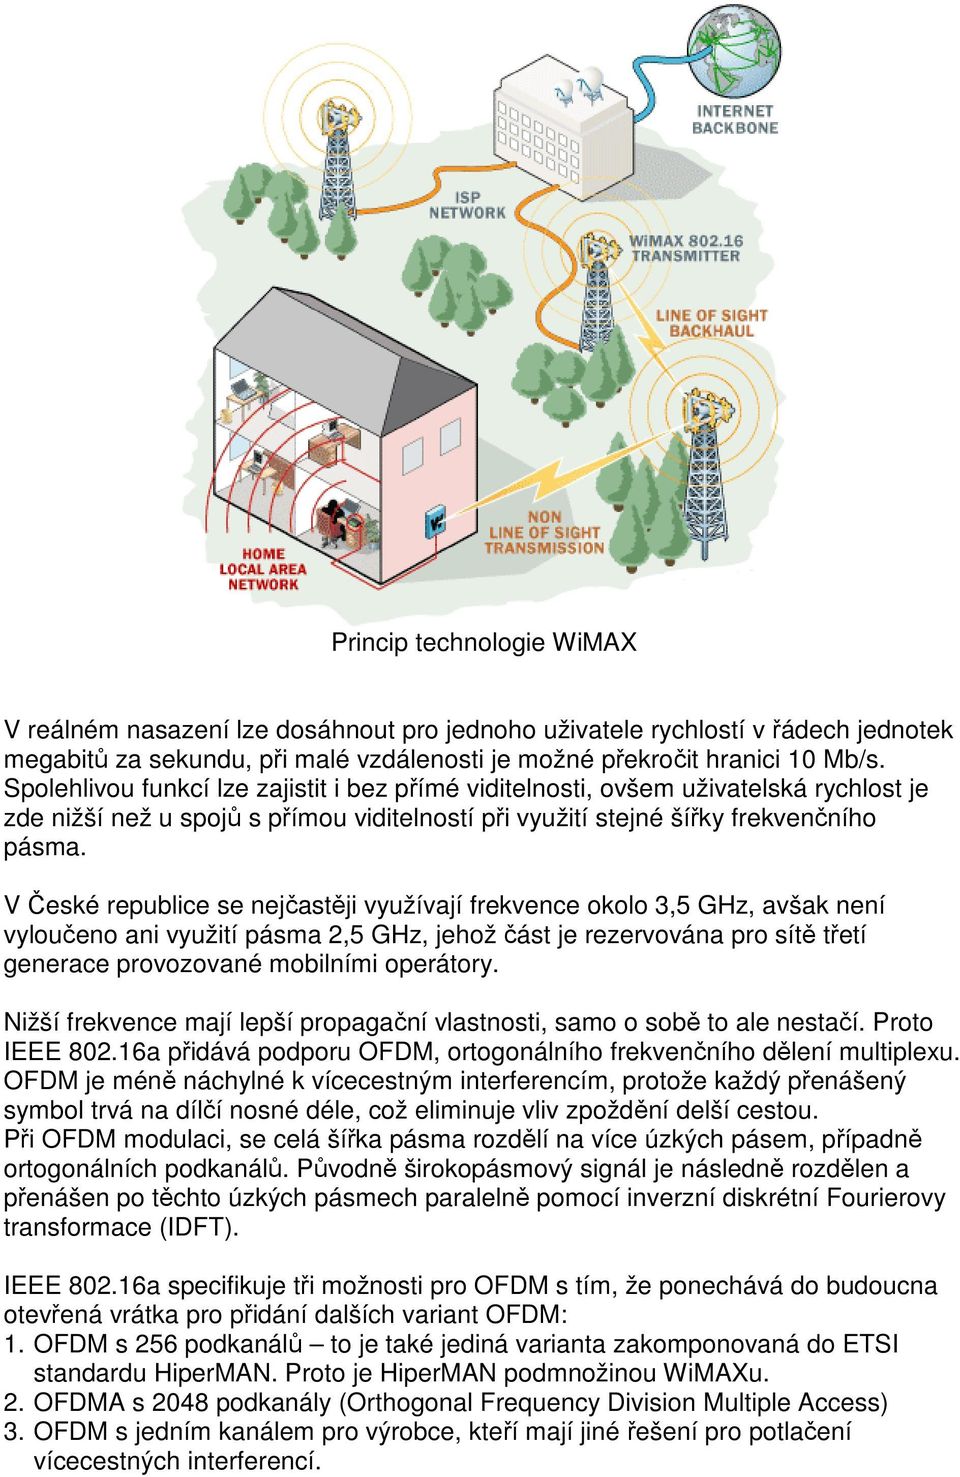 V České republice se nejčastěji využívají frekvence okolo 3,5 GHz, avšak není vyloučeno ani využití pásma 2,5 GHz, jehož část je rezervována pro sítě třetí generace provozované mobilními operátory.